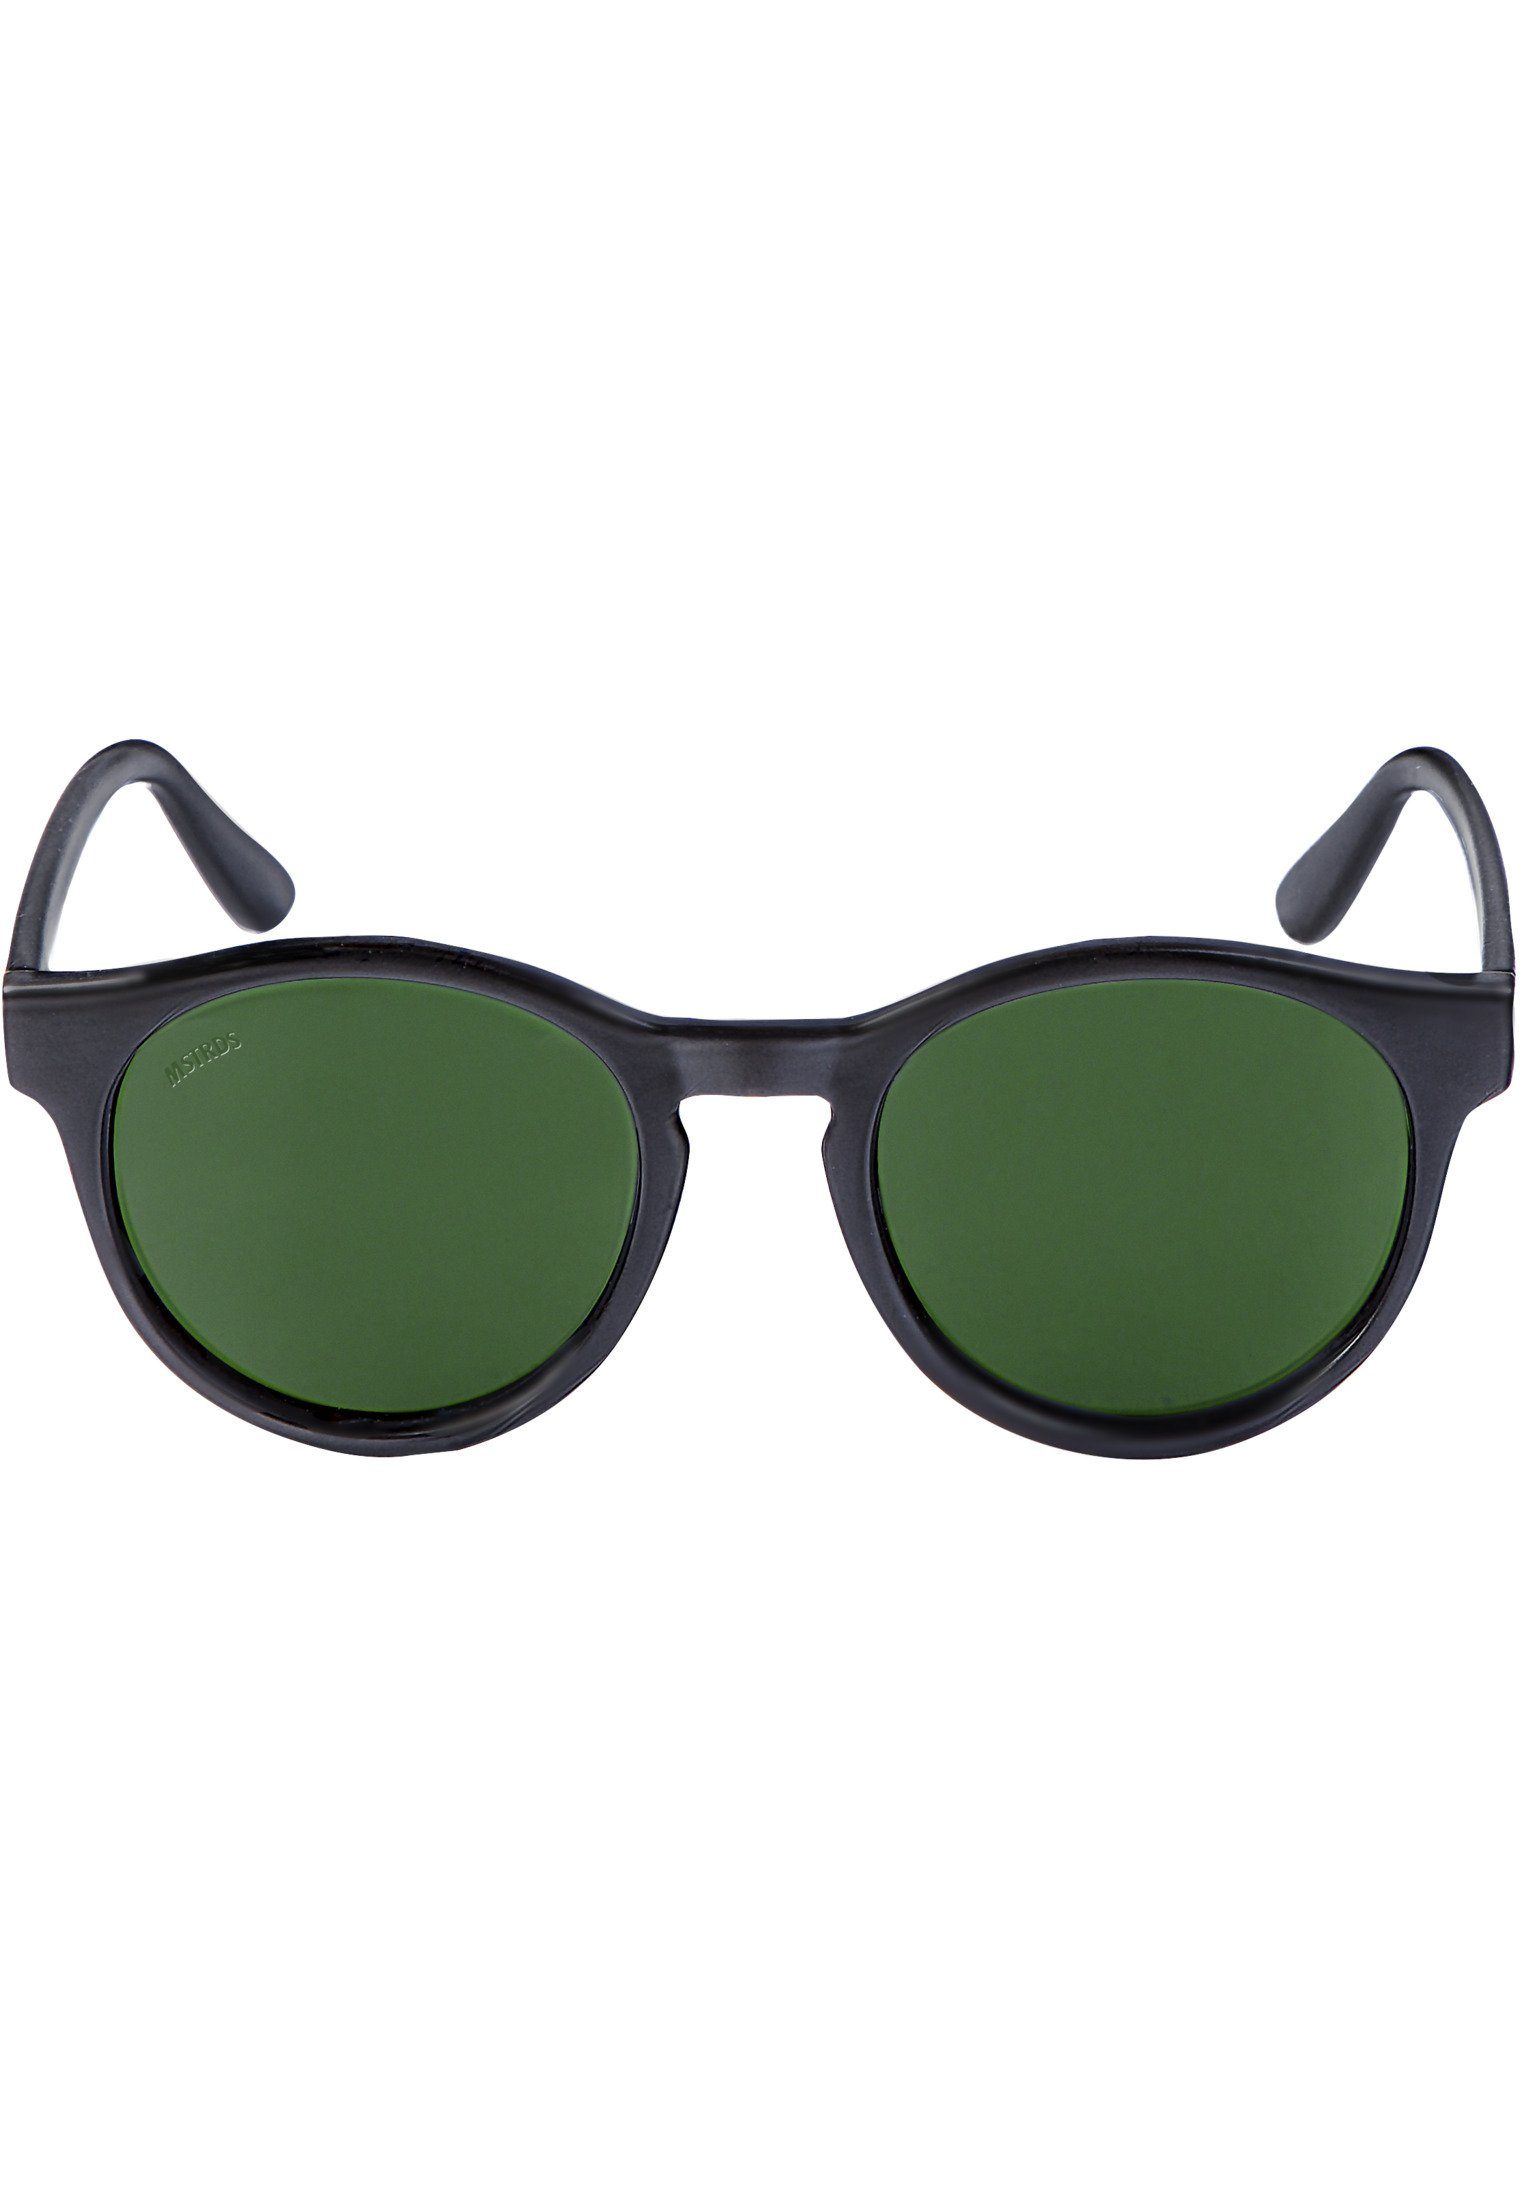 Accessoires Sonnenbrille Sunglasses Sunrise blk/grn MSTRDS